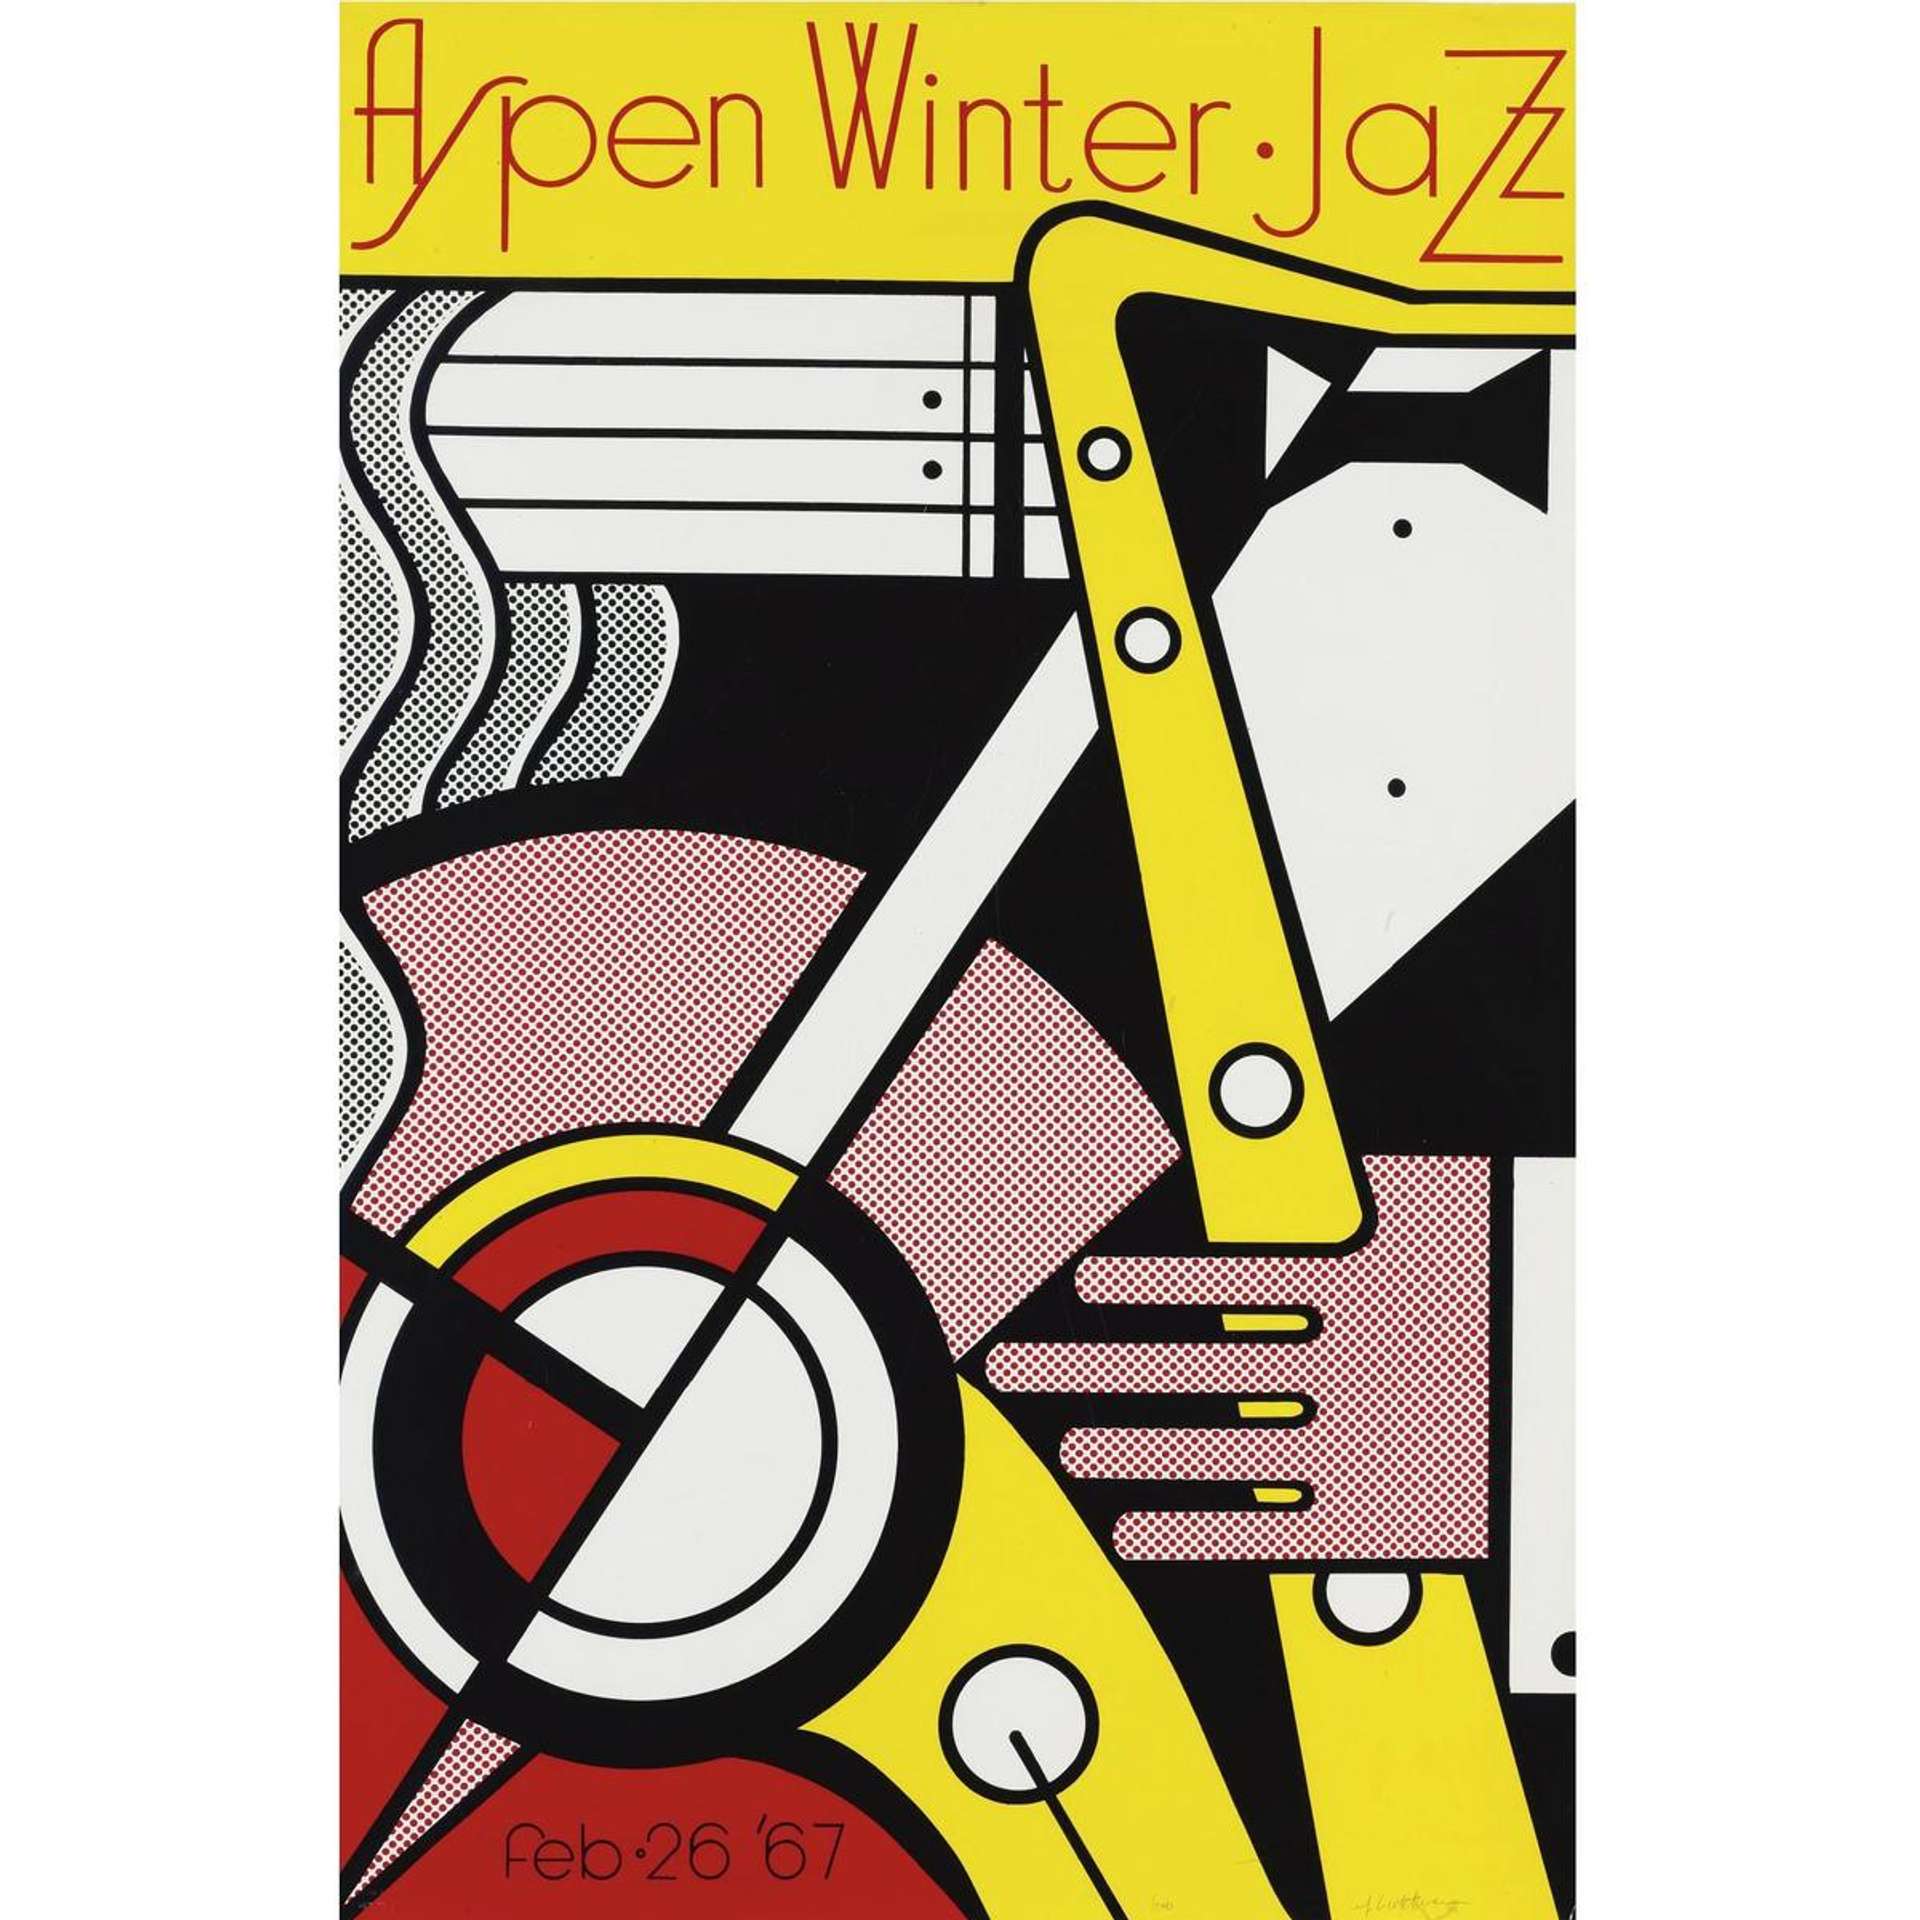 Aspen Winter Jazz Poster by Roy Lichtenstein